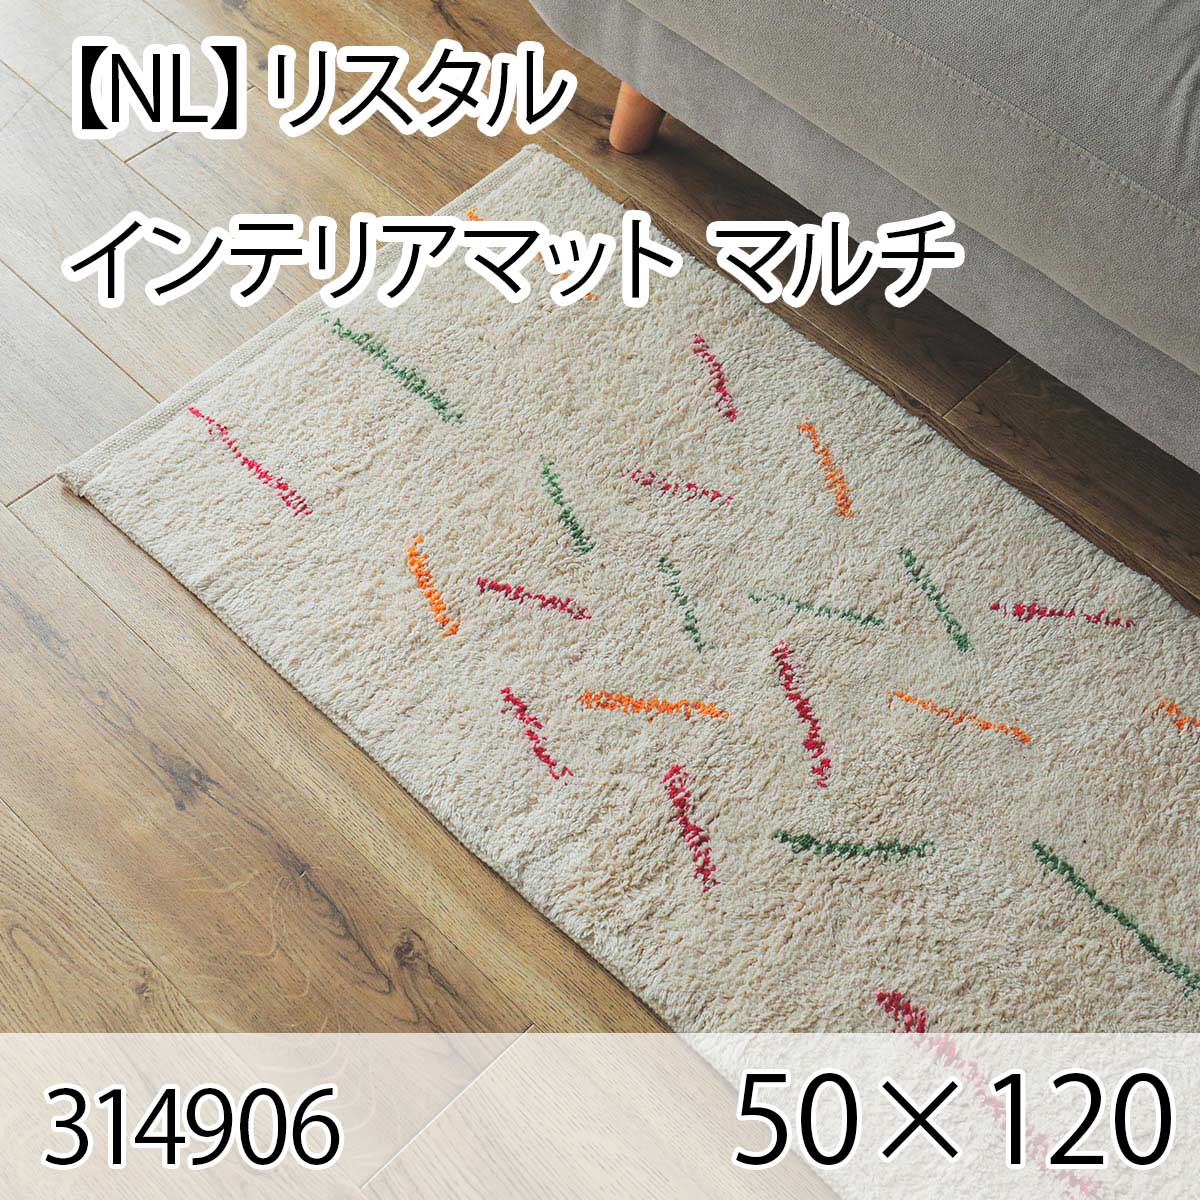 【NL】リスタル インテリアマット 50cmx120cm マルチ